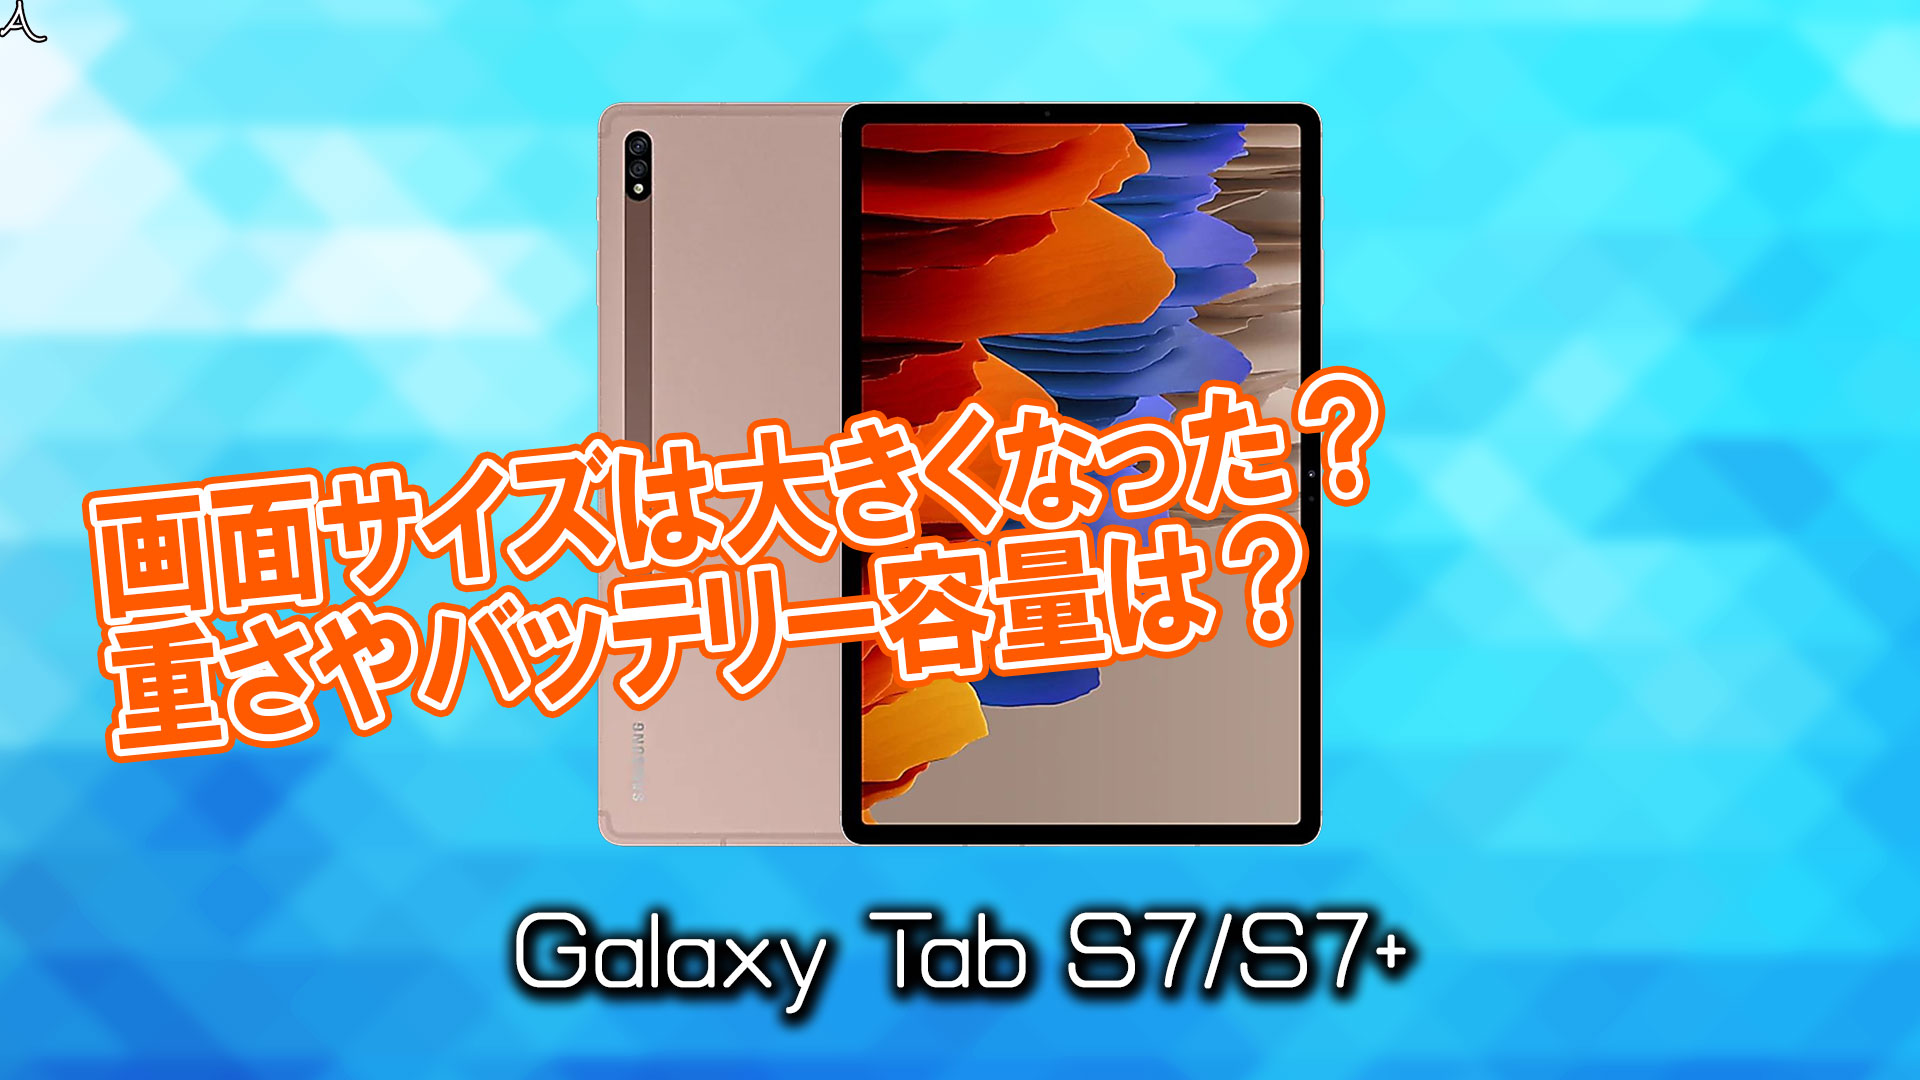 「Galaxy Tab S7/S7+」のサイズや重さを他のスマホと細かく比較